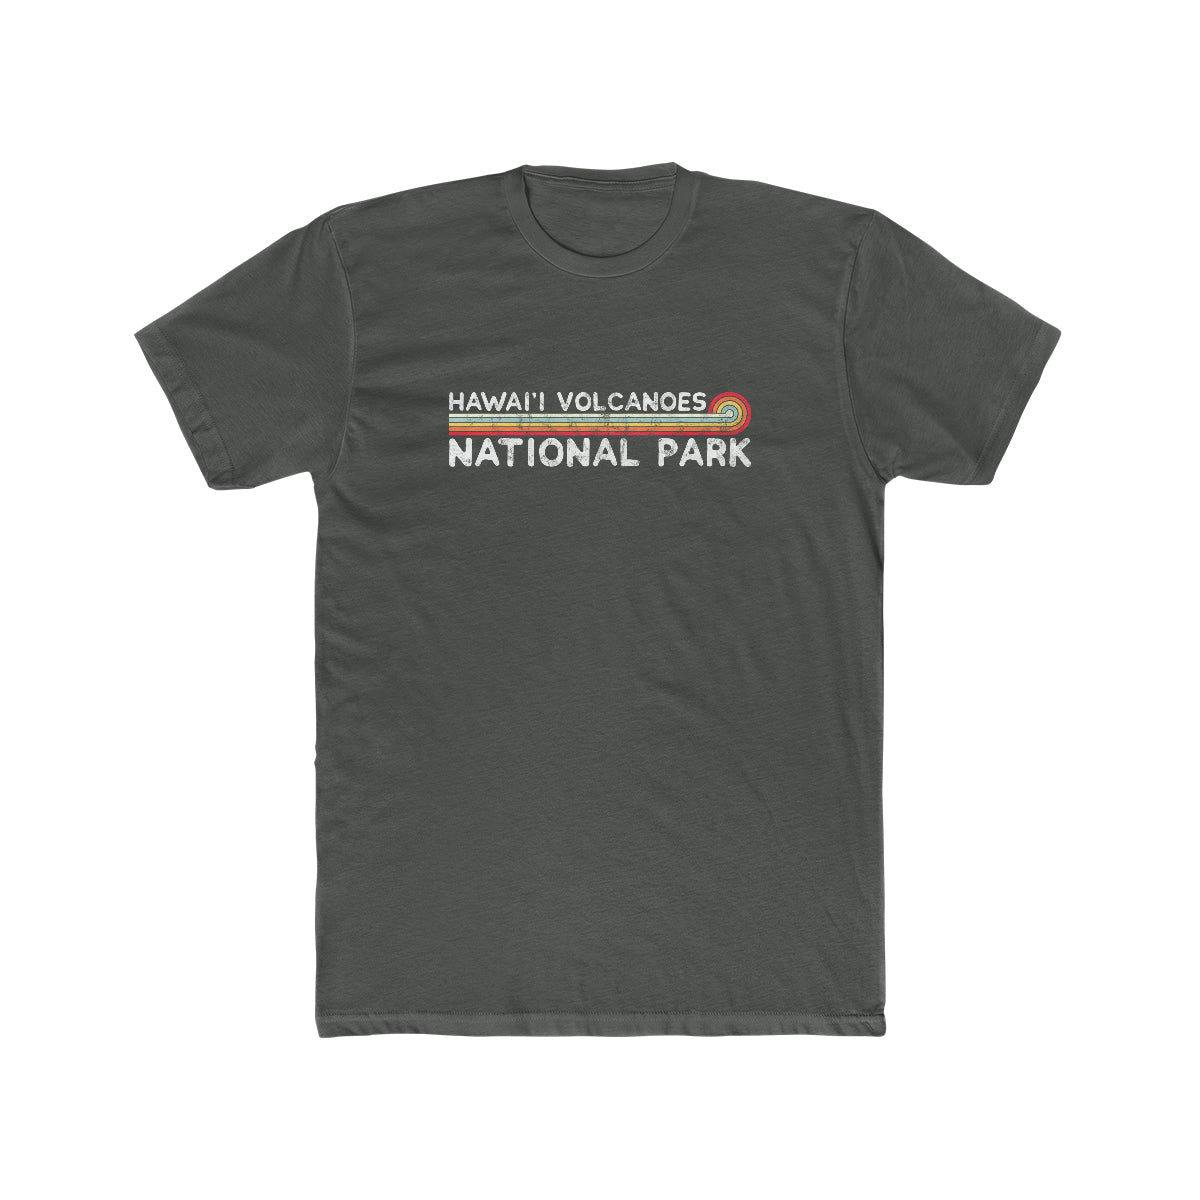 Hawaii Volcanoes National Park T-Shirt - Vintage Stretched Sunrise